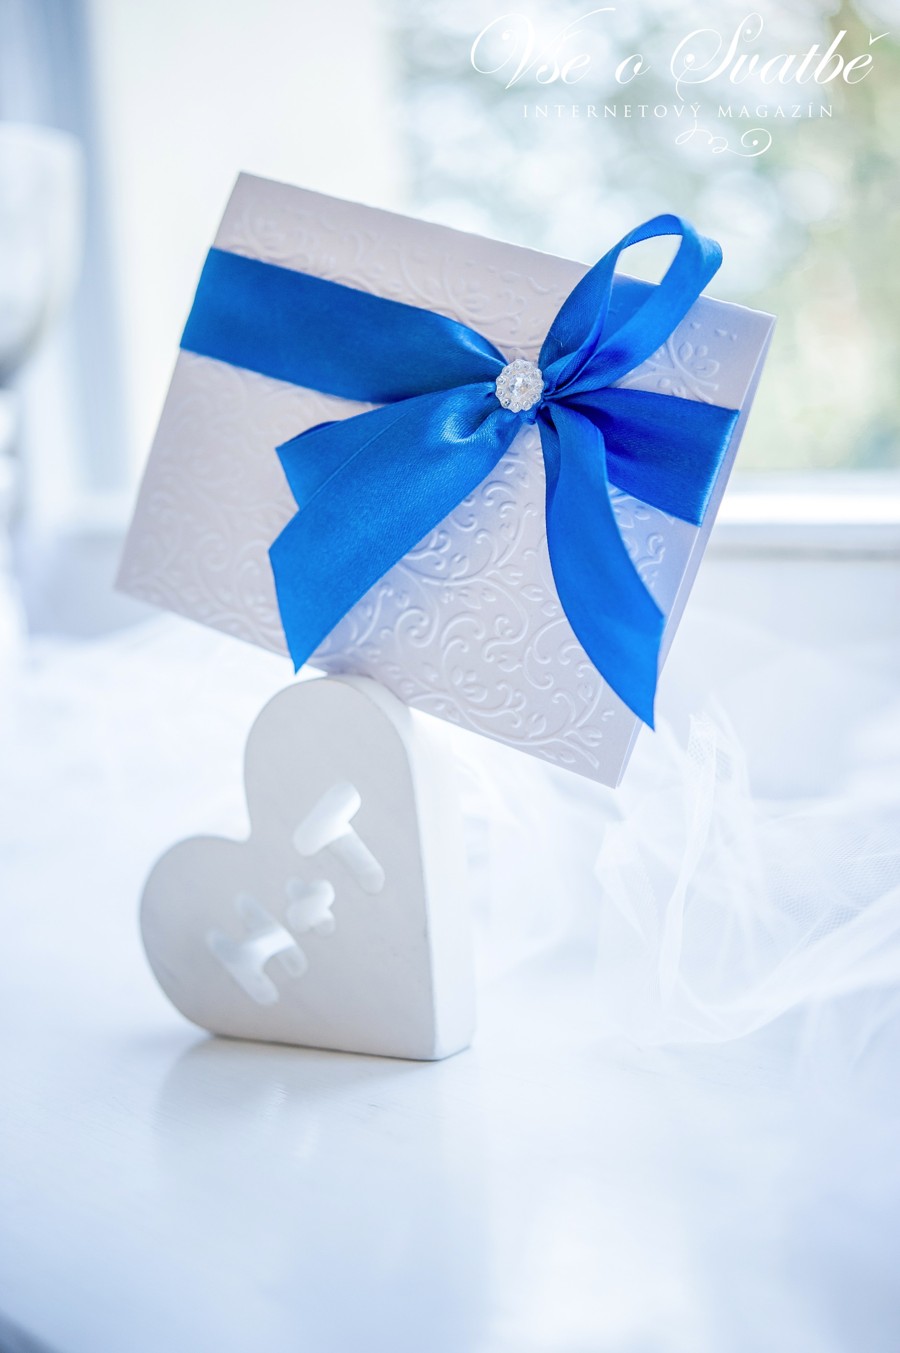 Bílá tlačená svatební pozvánka s modrou stuhou.